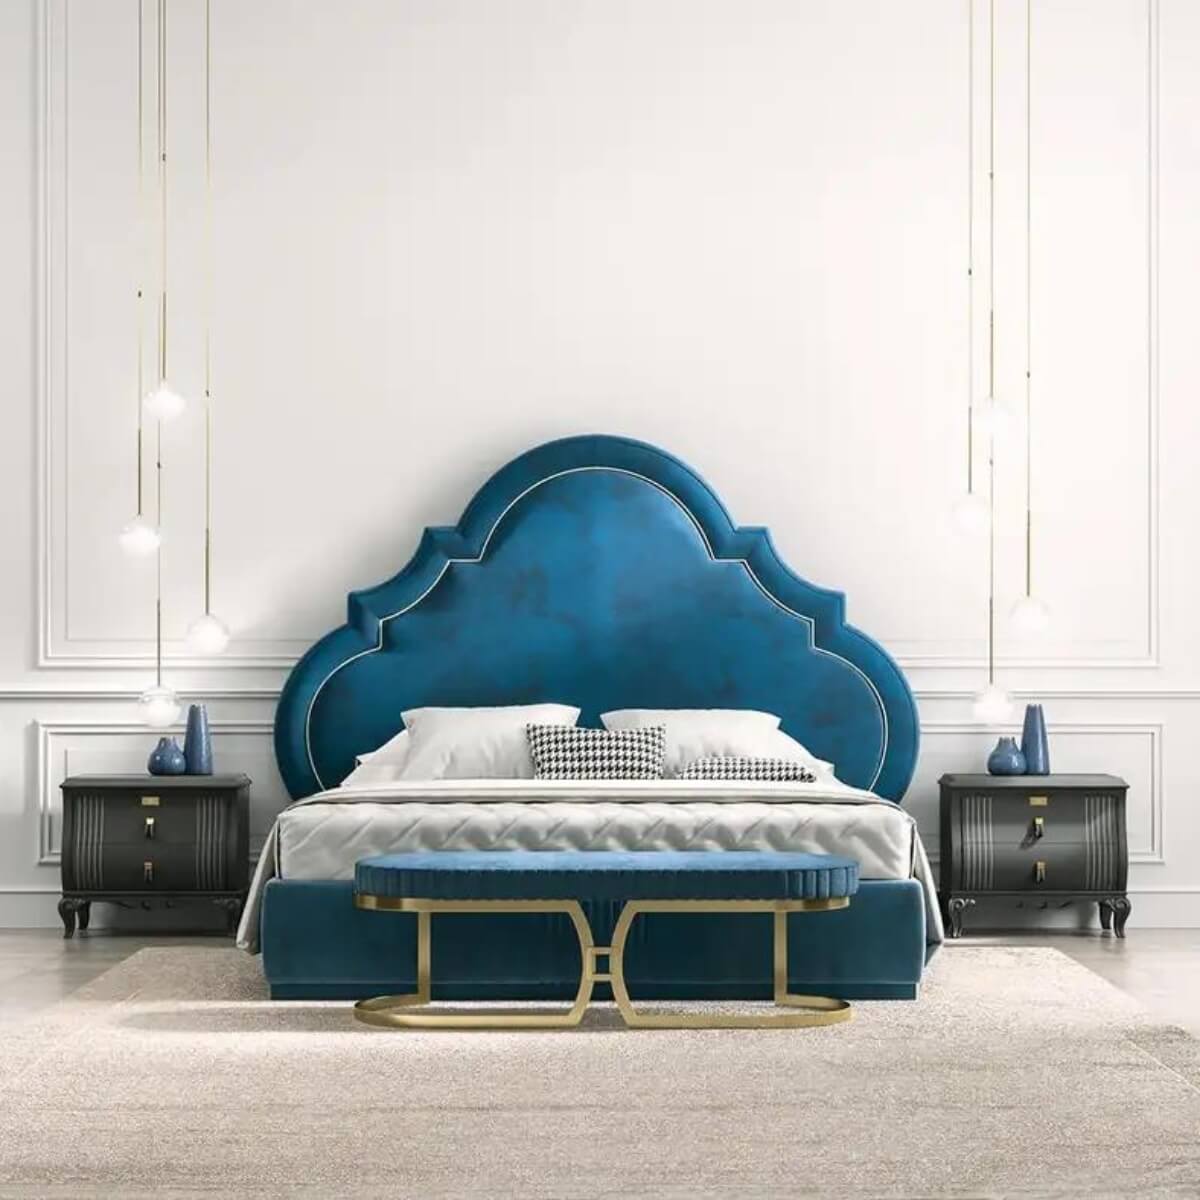 RegalRest Delightful Velvet Bed